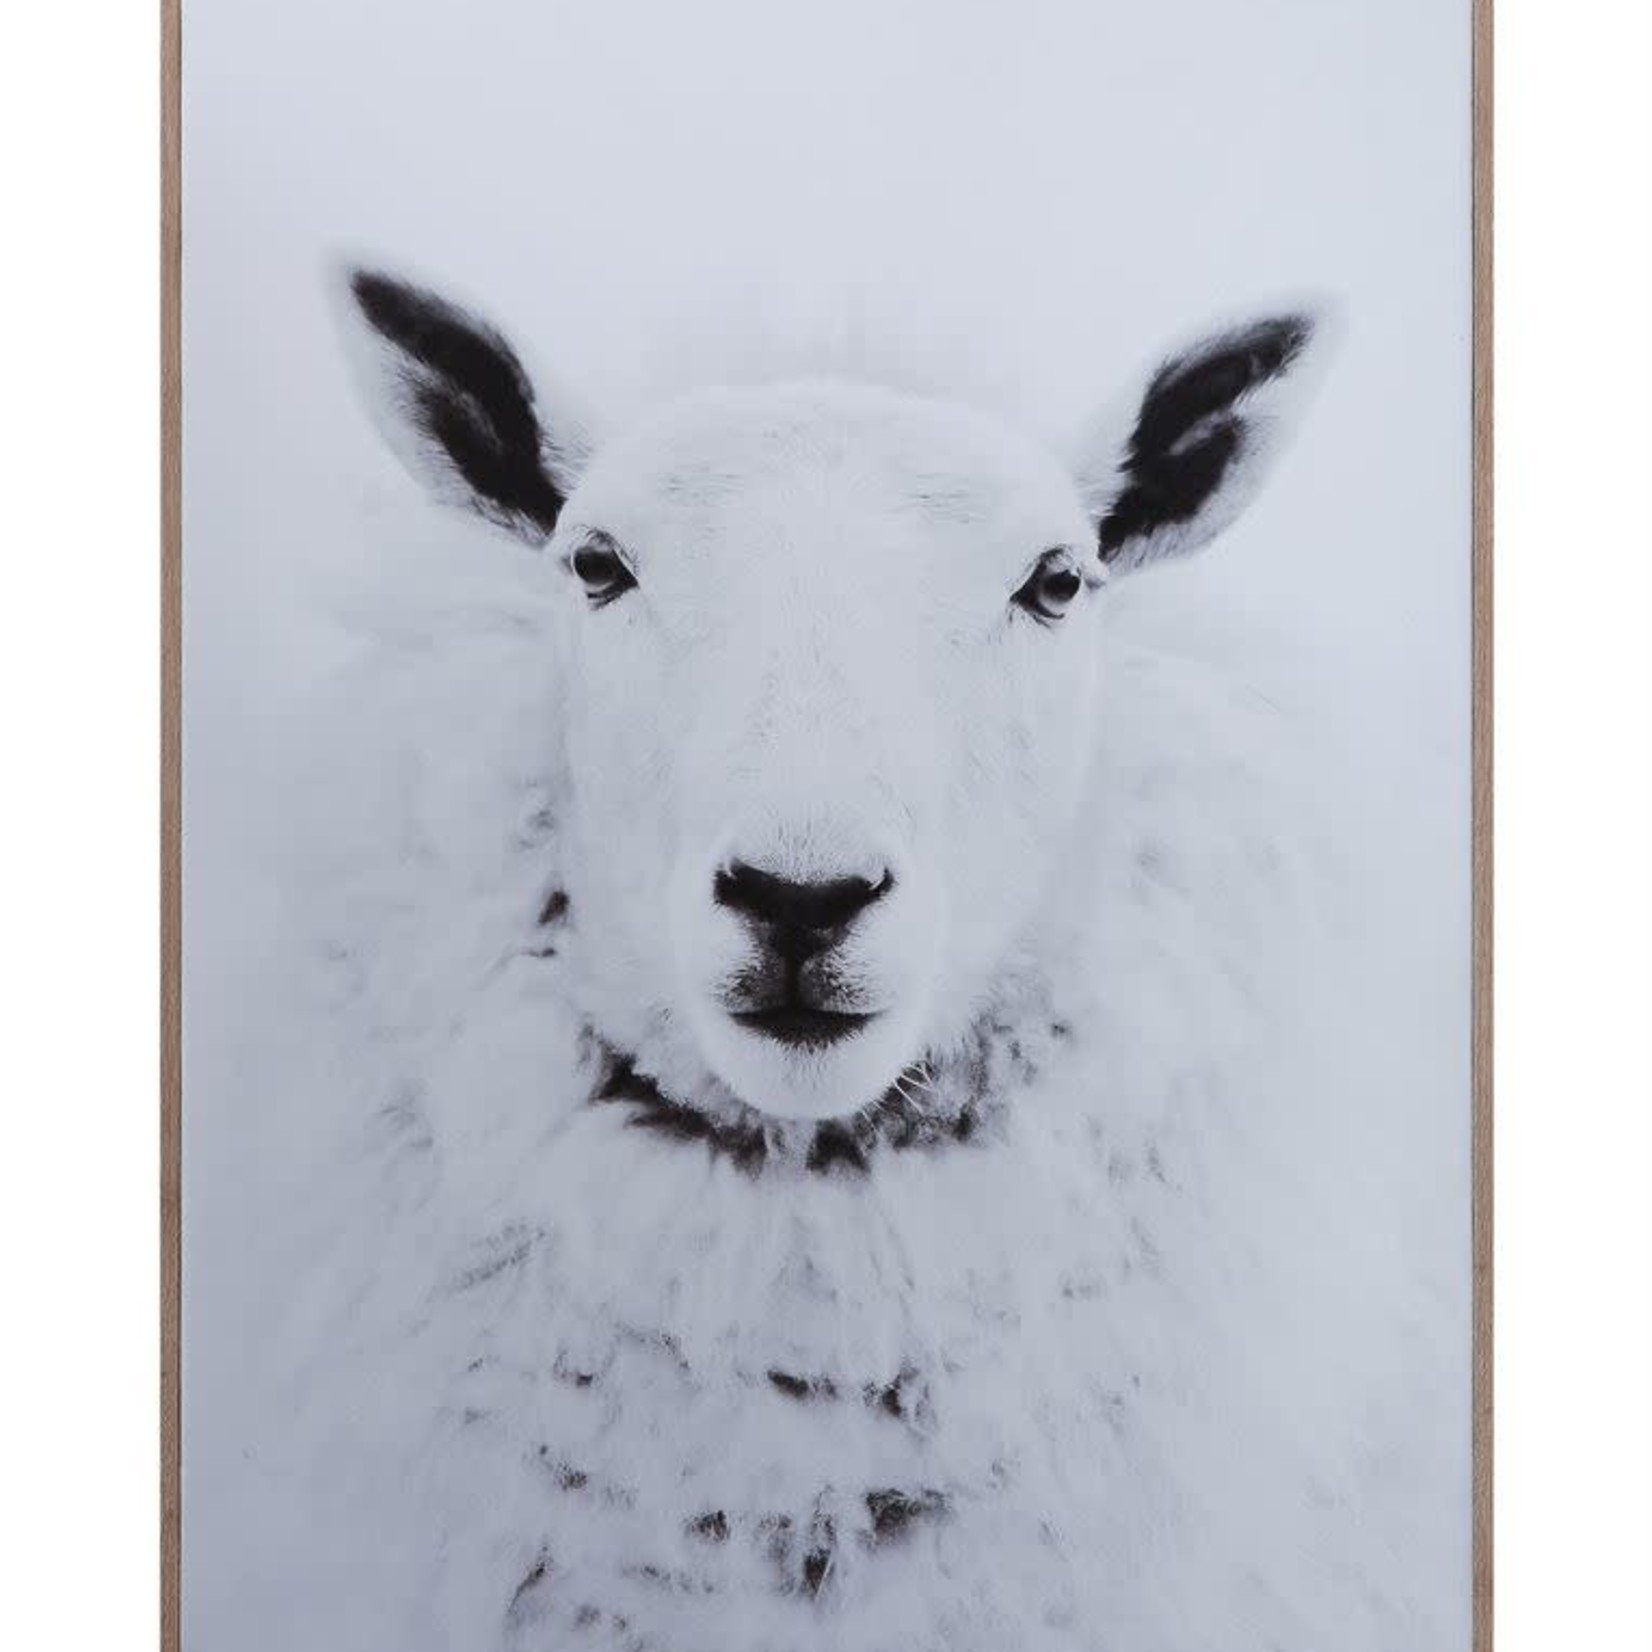 Framed Canvas Wall Decor w/ Sheep